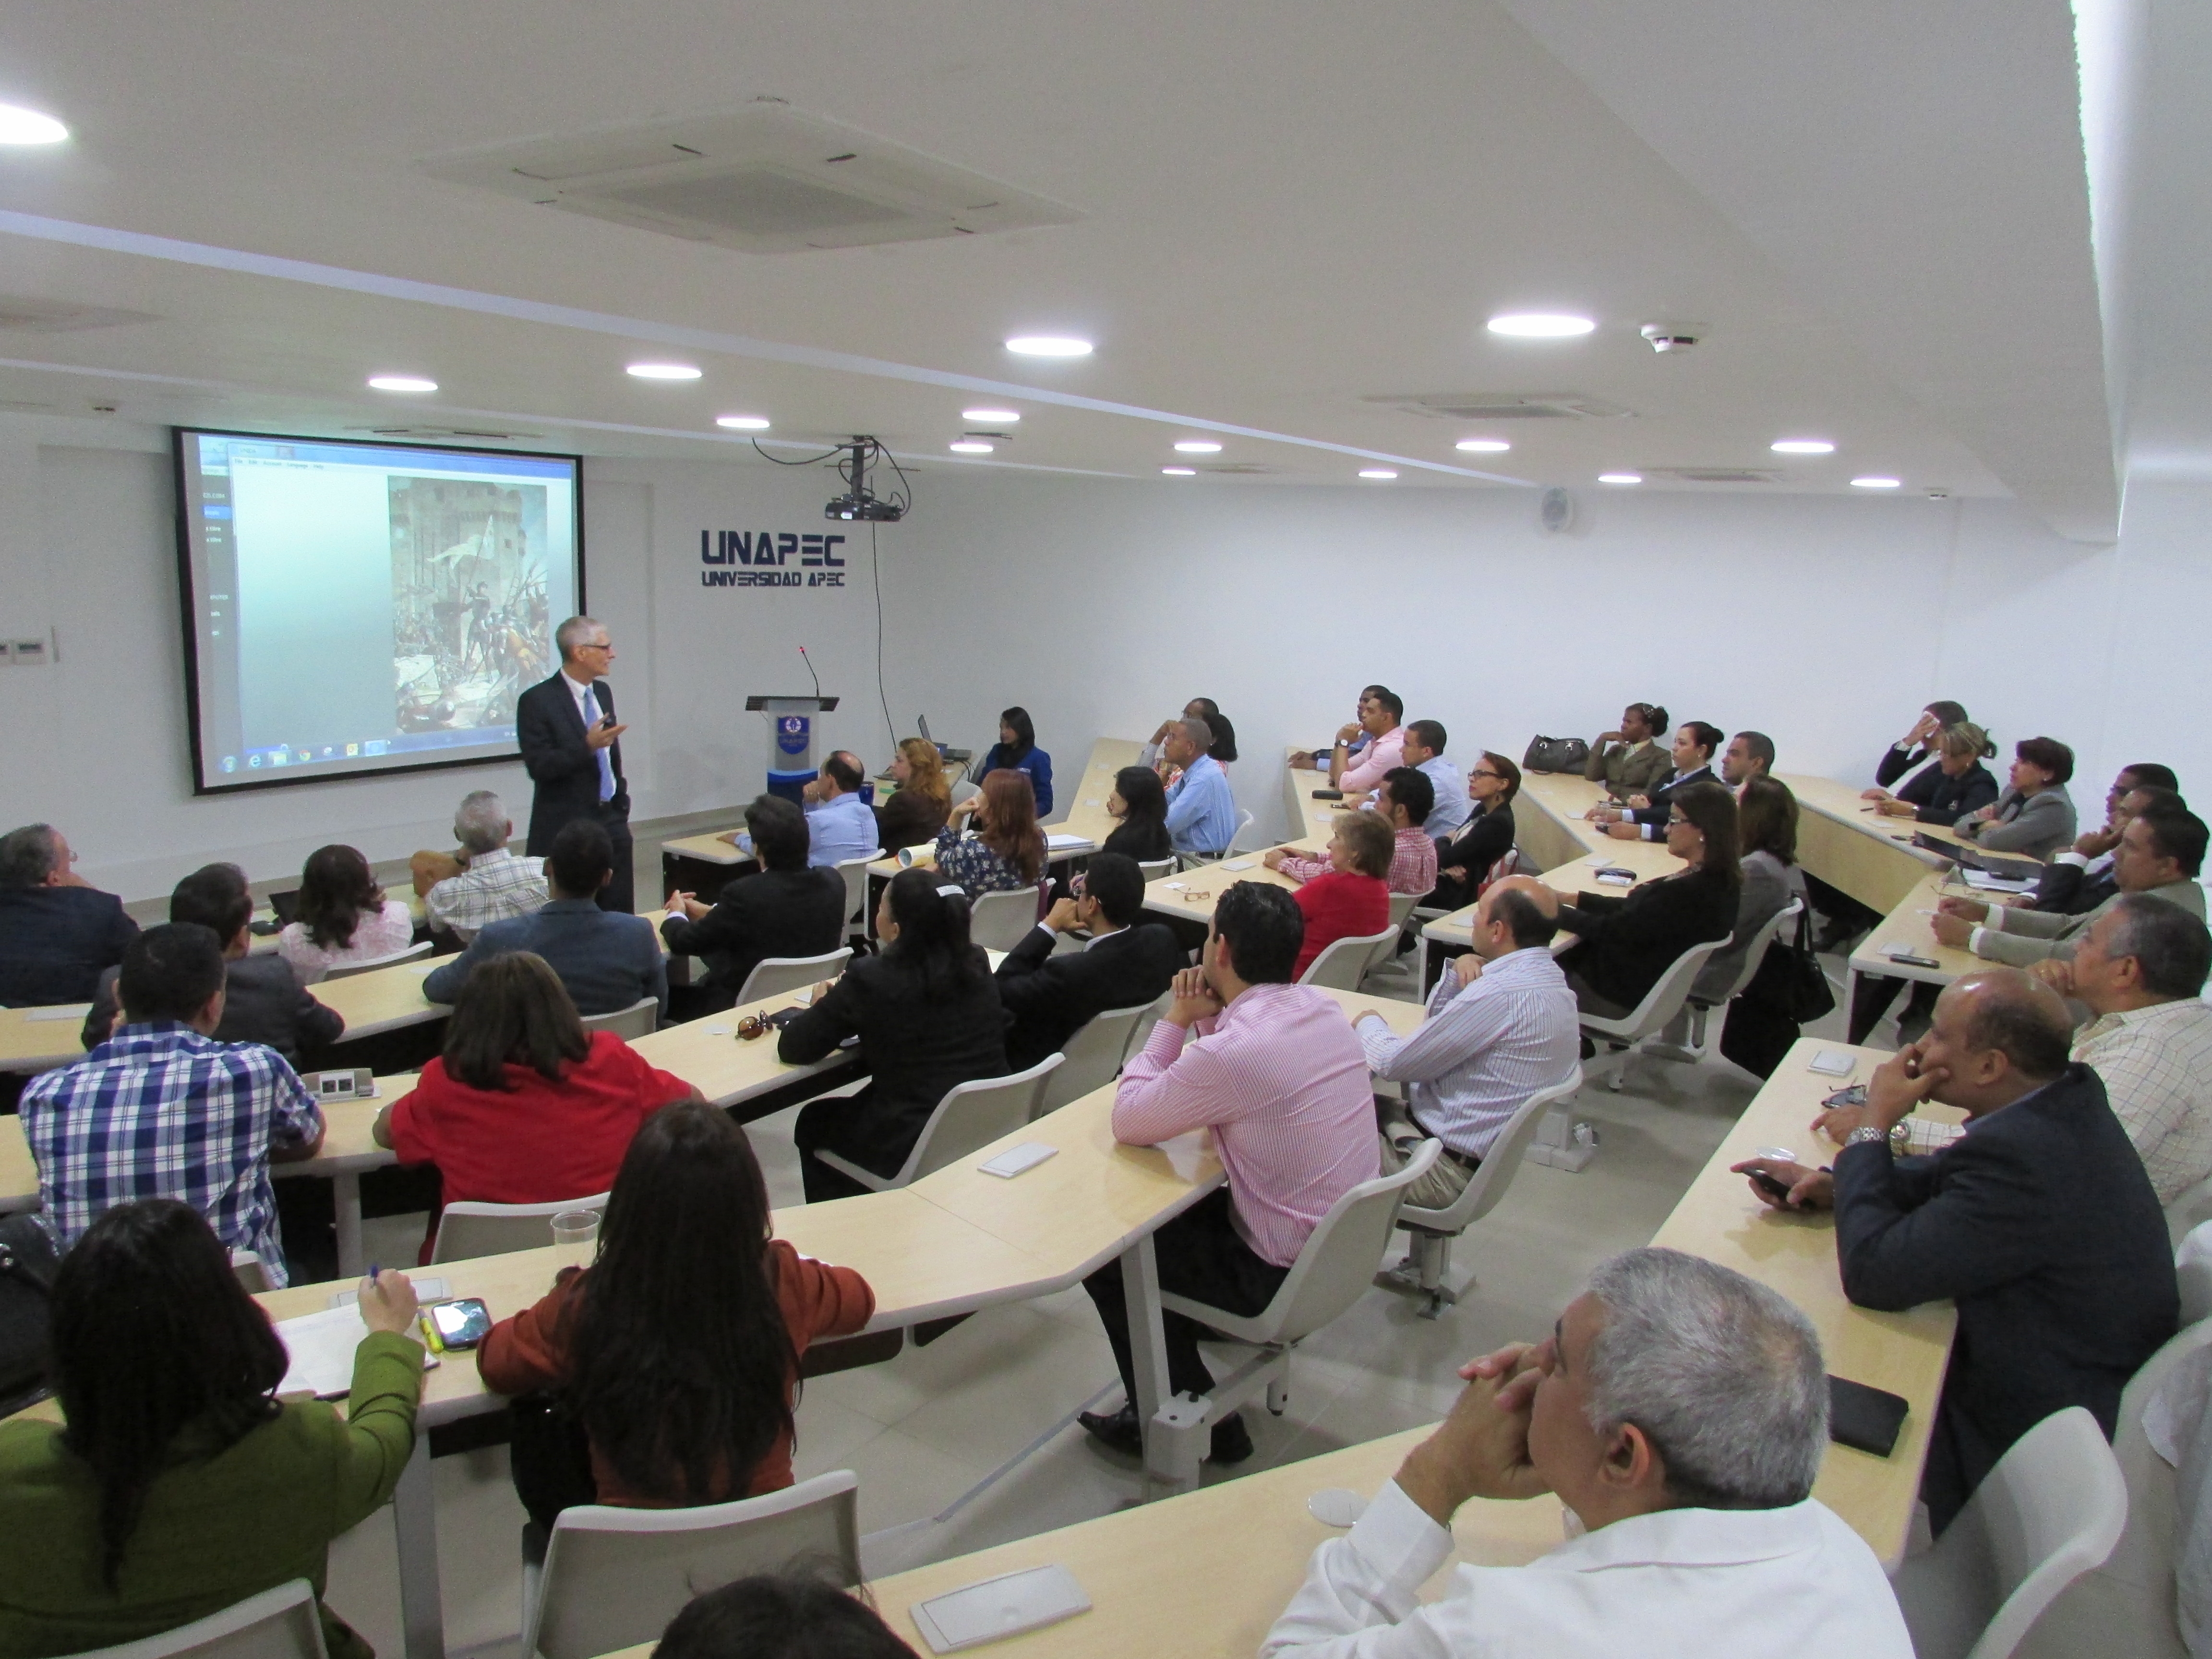 La actividad fue realizada en el Salón de Conferencias del Campus Principal de UNAPEC.